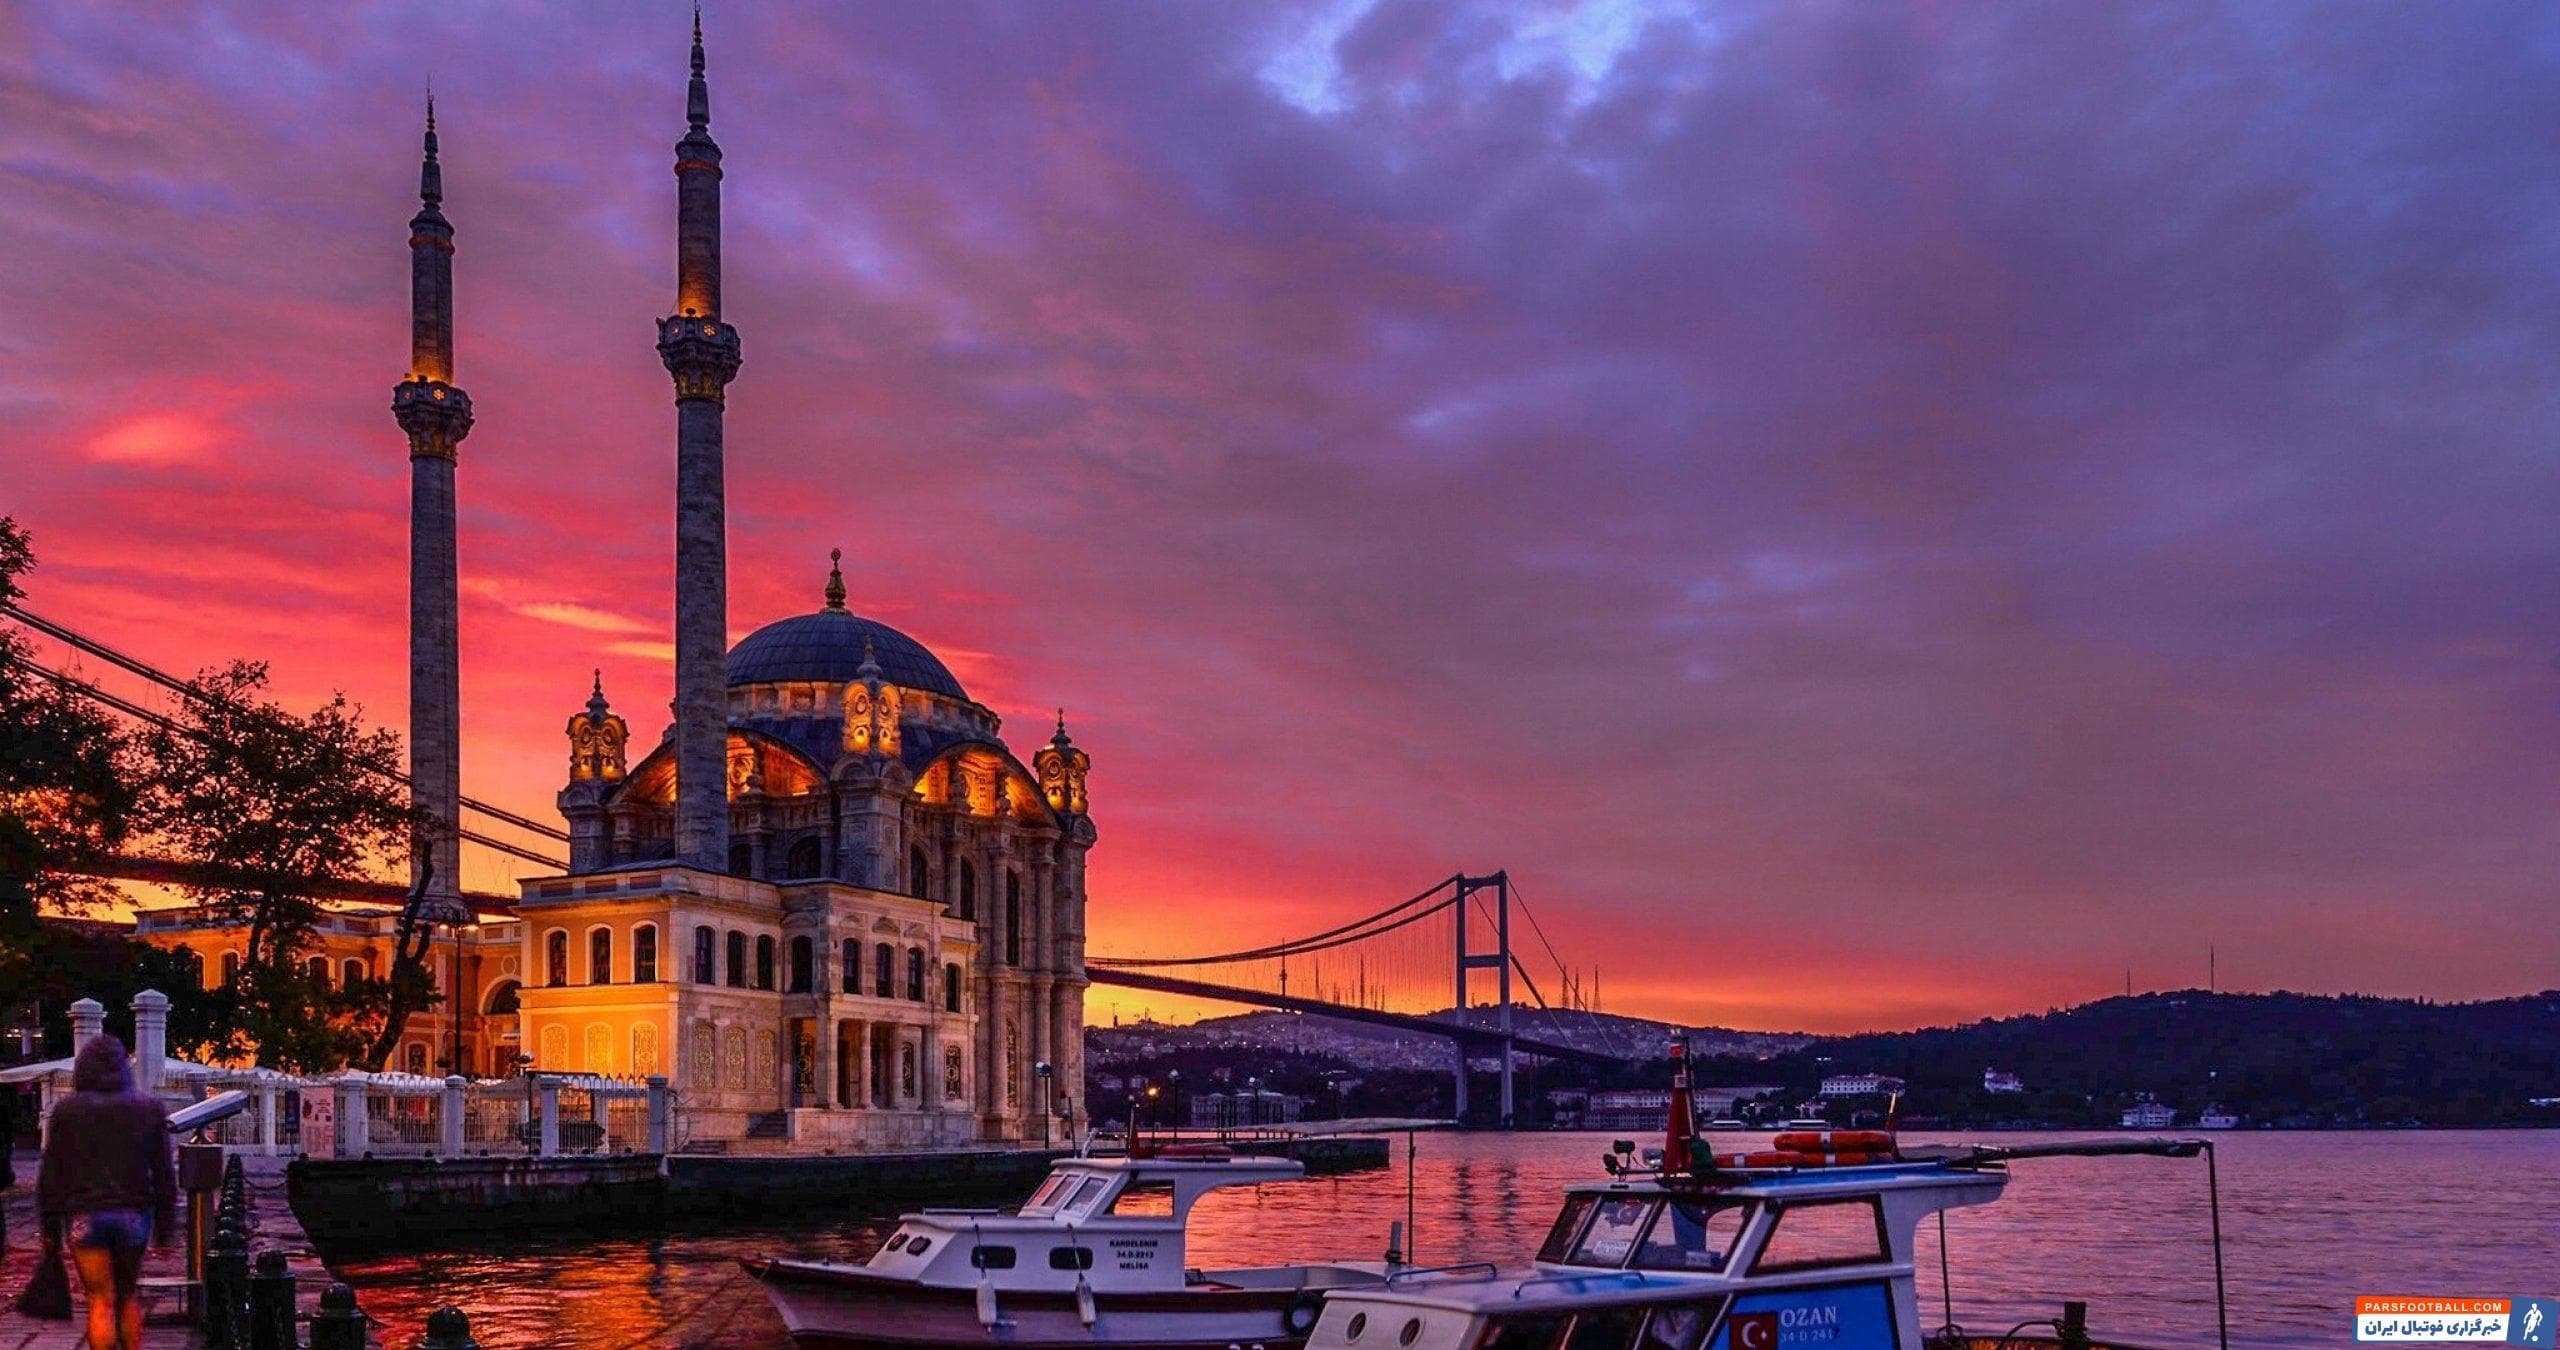 آشنایی با کاخ توپکاپی به عنوان جاذبه گردشگری استانبول